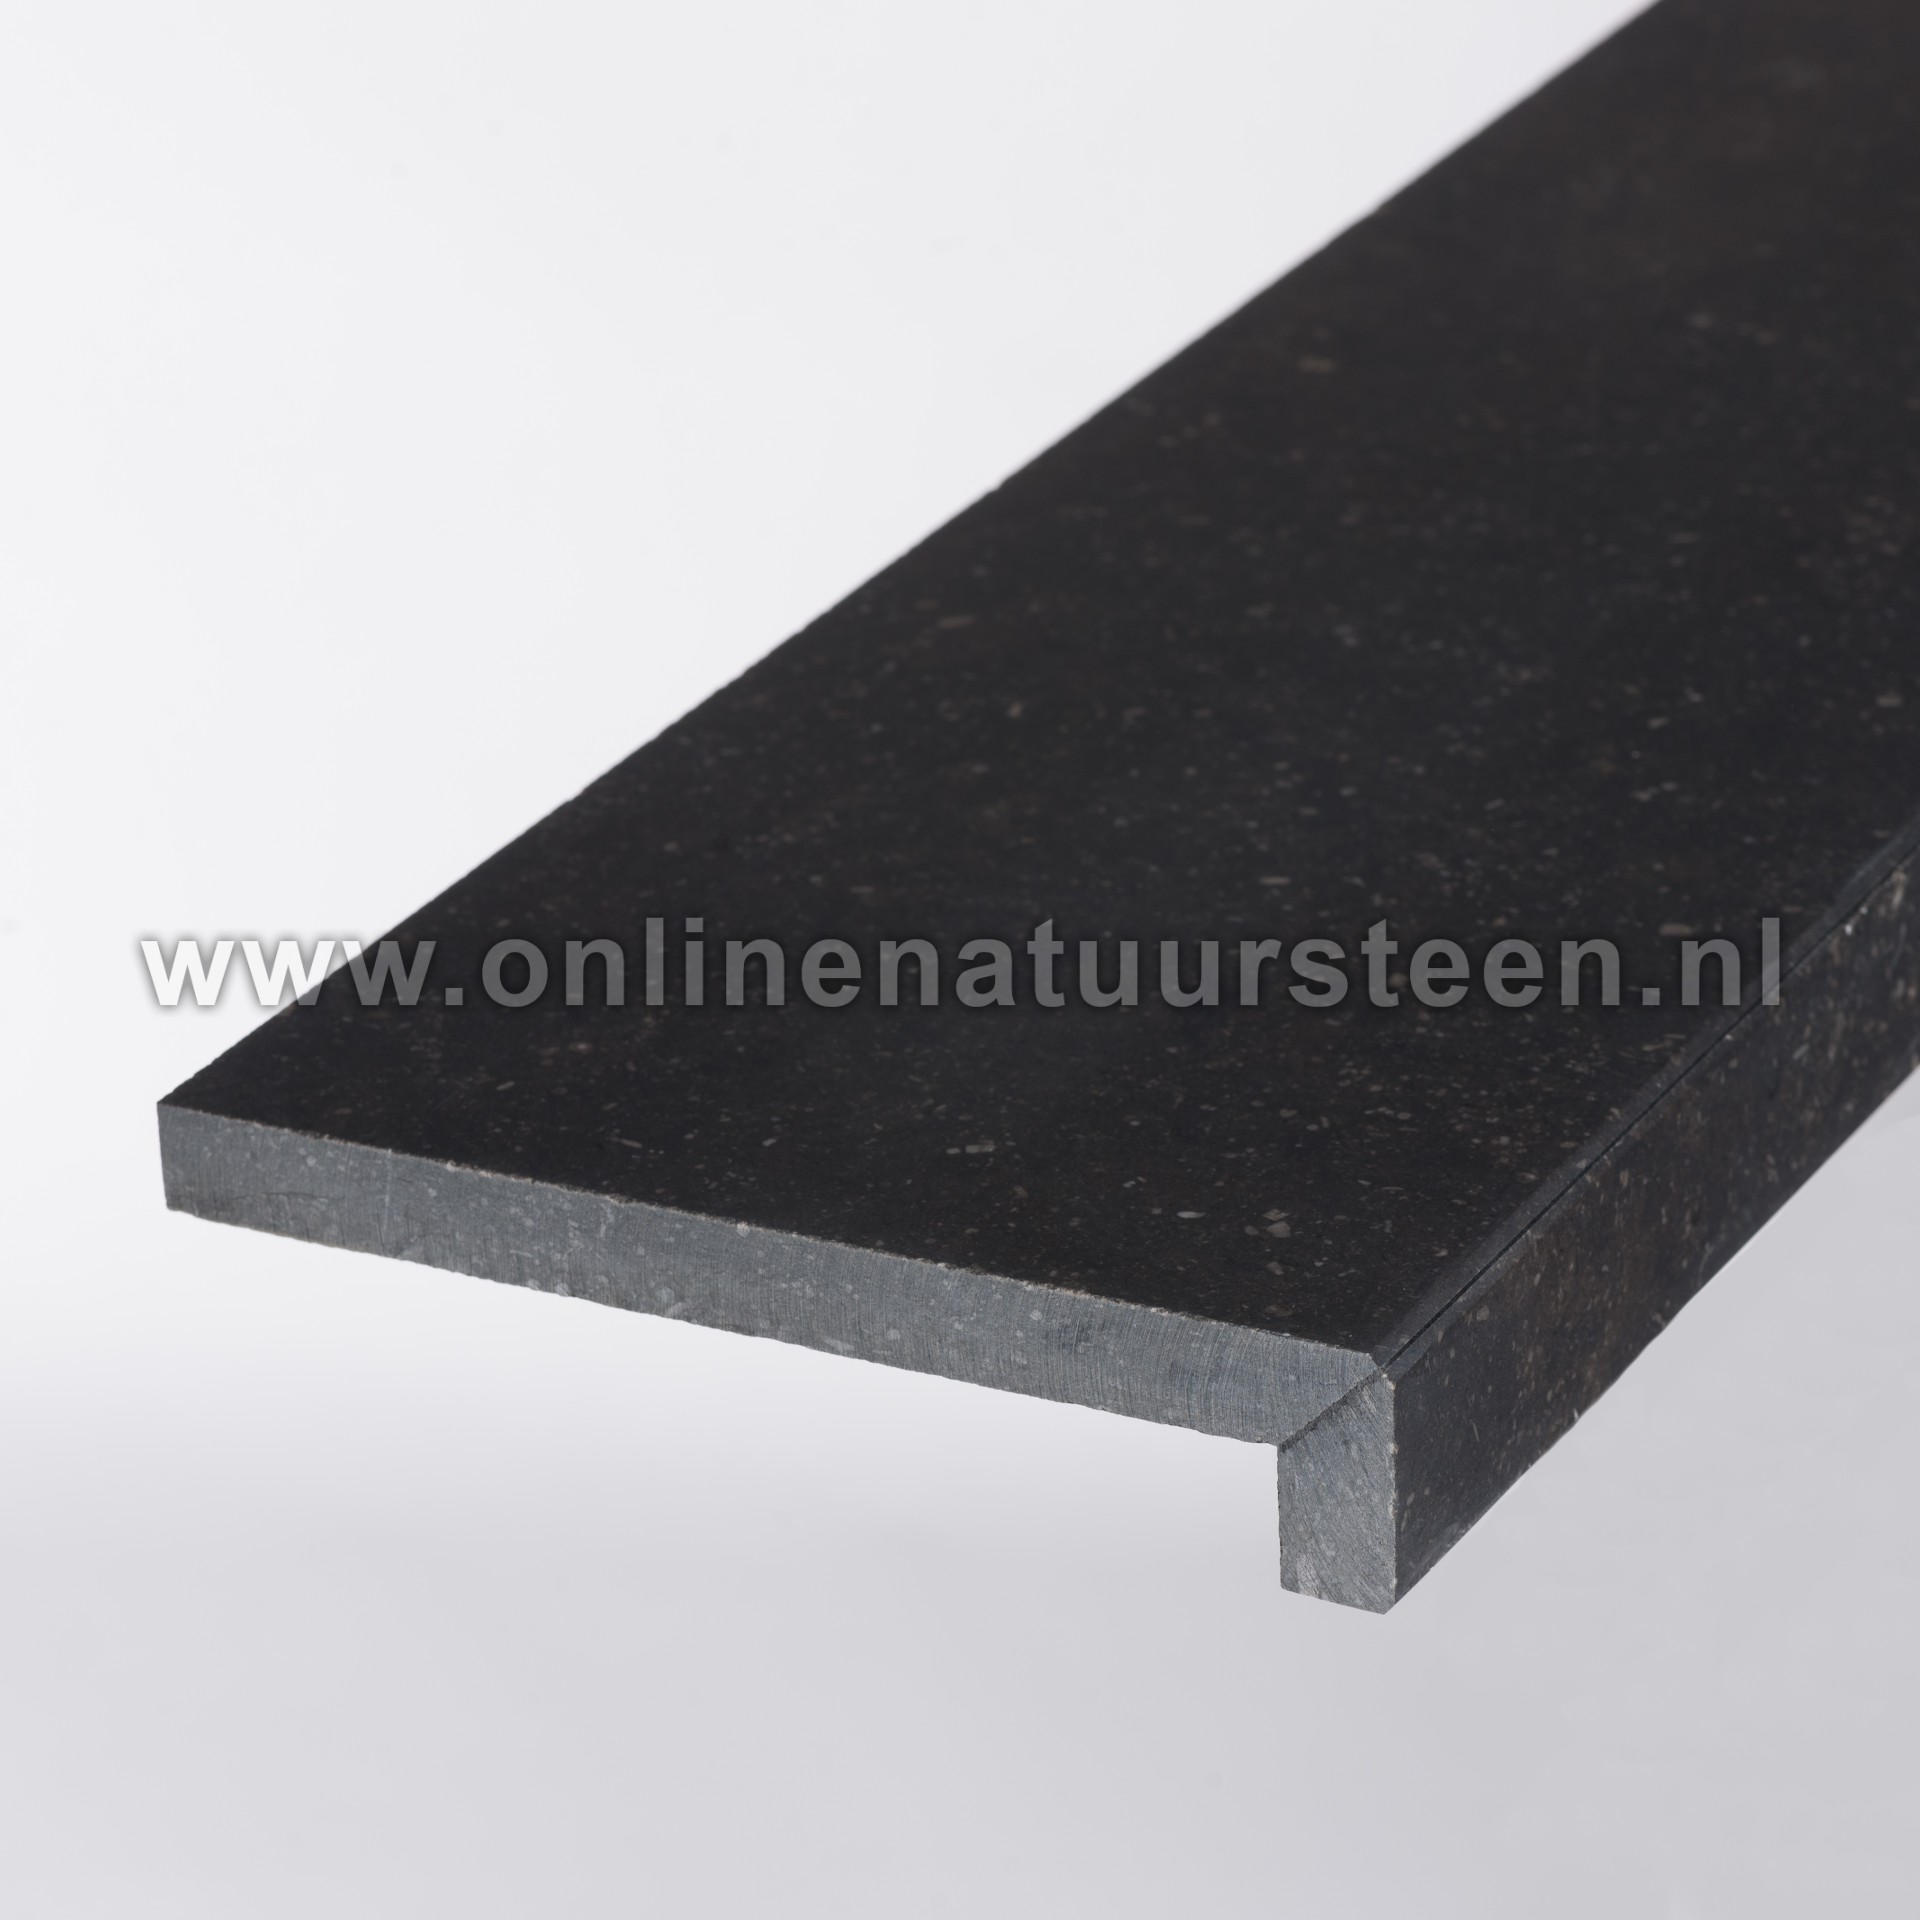 Belgisch hardsteen (donker gezoet) 2cm dik aanzicht 2cm t/m 10cm dik.